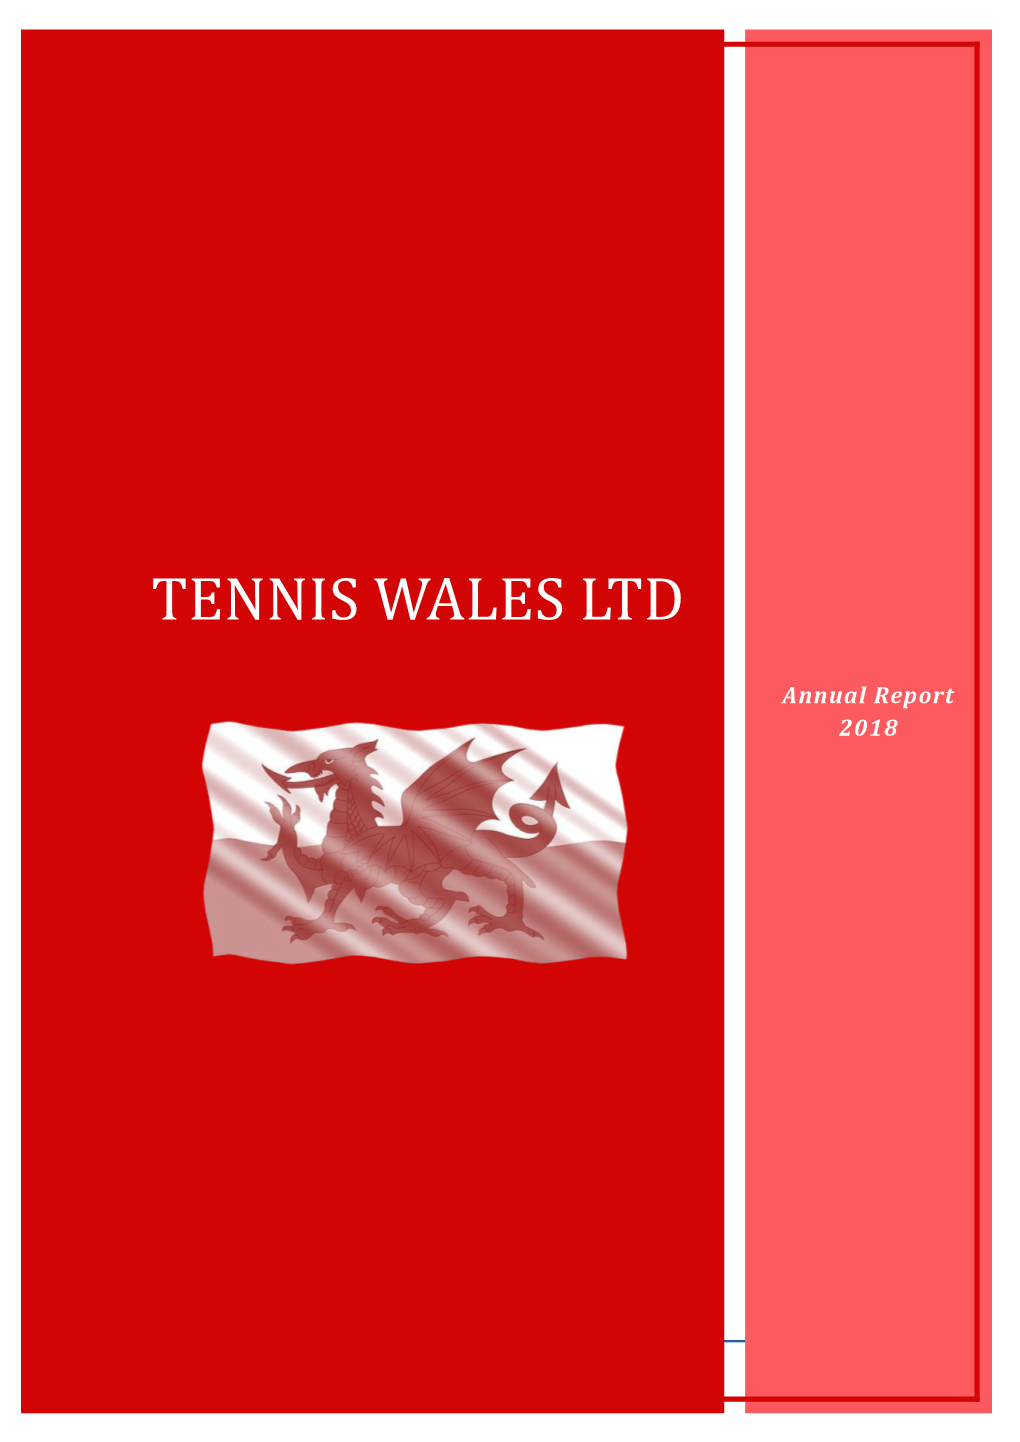 Tennis Wales Ltd